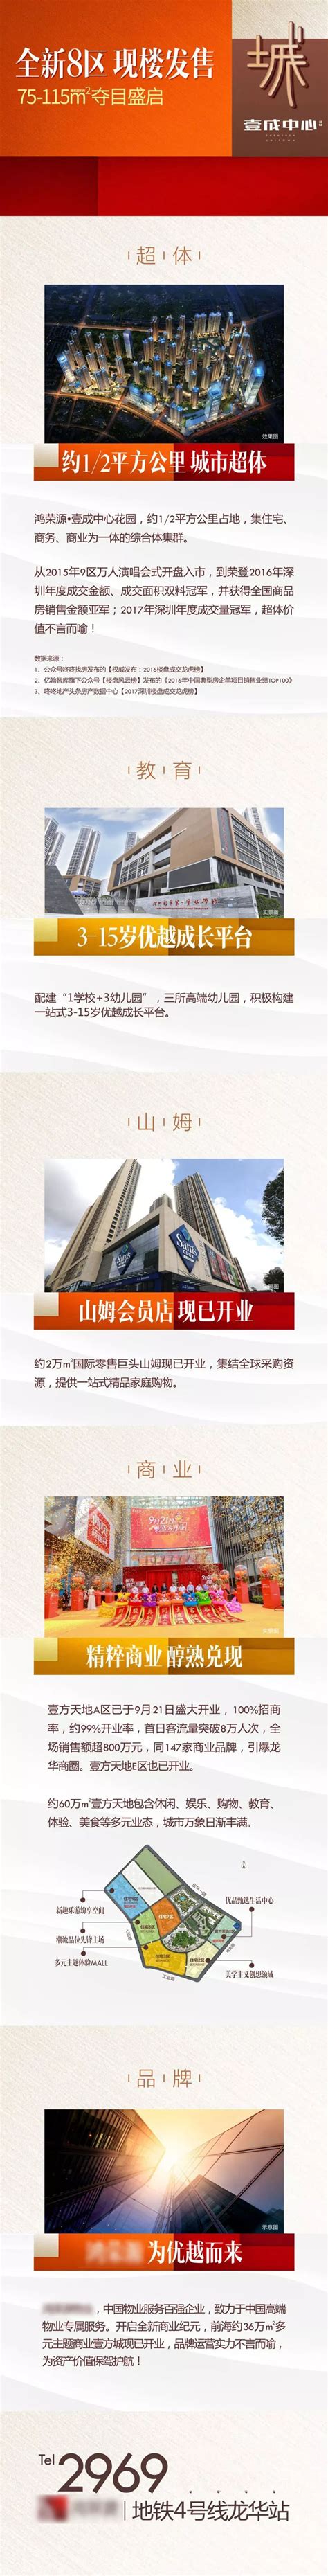 Shenzhen Toye Technology Co.,Ltd__坪地外贸网站建设_坪地小语种网站建设_坪地网站建设公司,坪地企业邮箱公司 ...